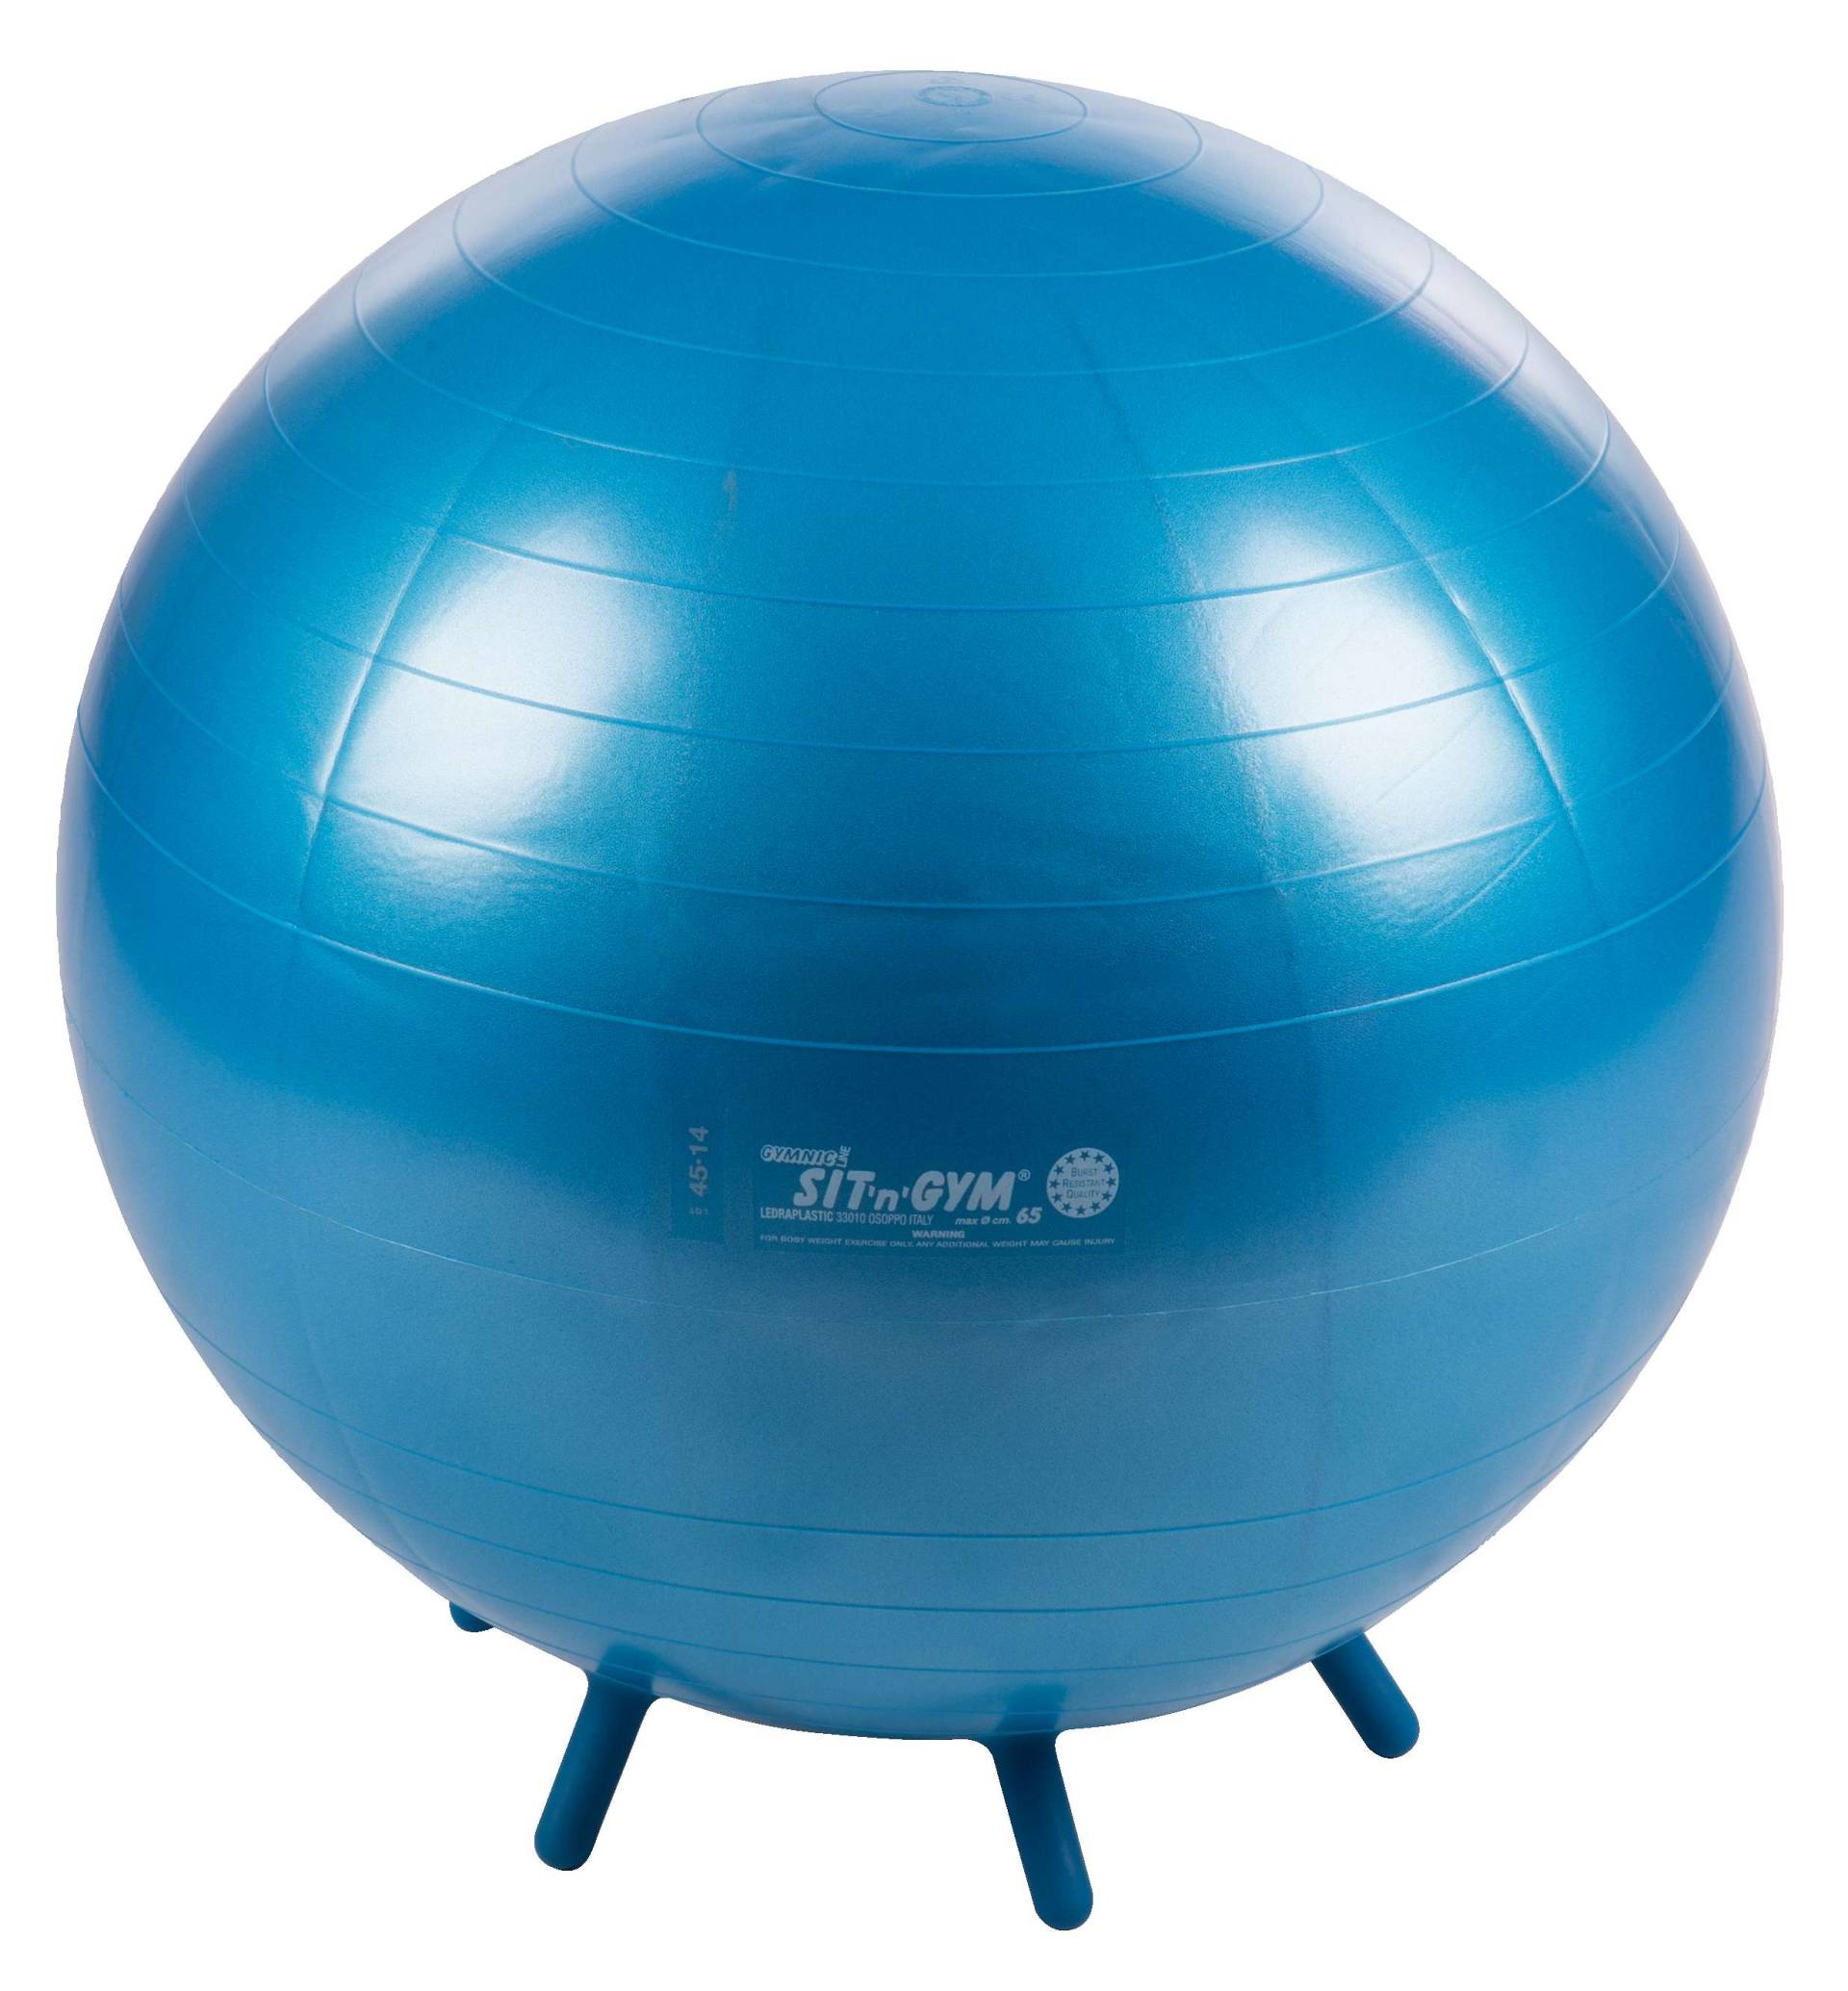 Gymnic Fitnessball "Sit 'n' Gym", ø 65 cm, Blau von Gymnic